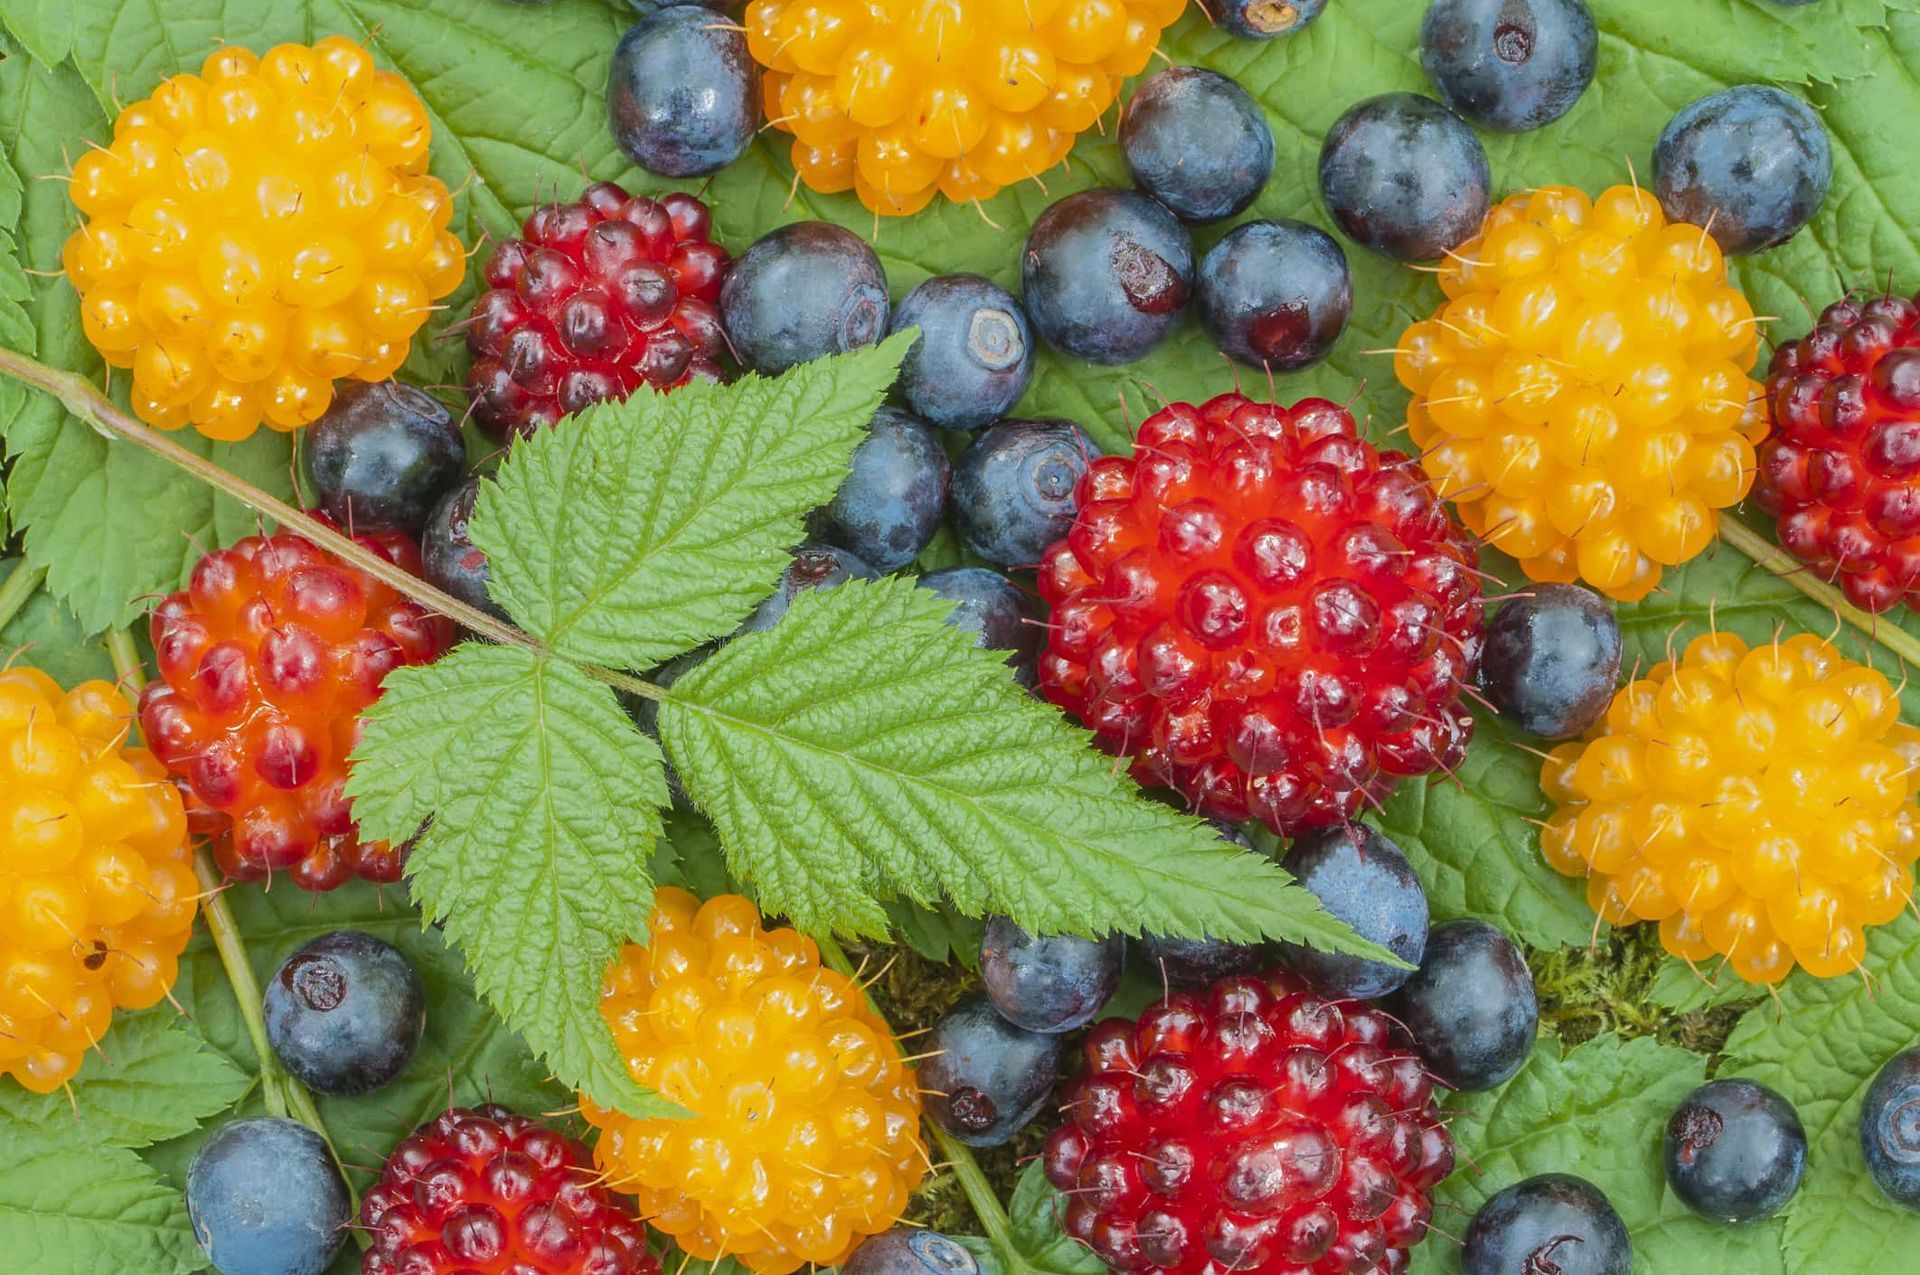 Wild Alaskan berries